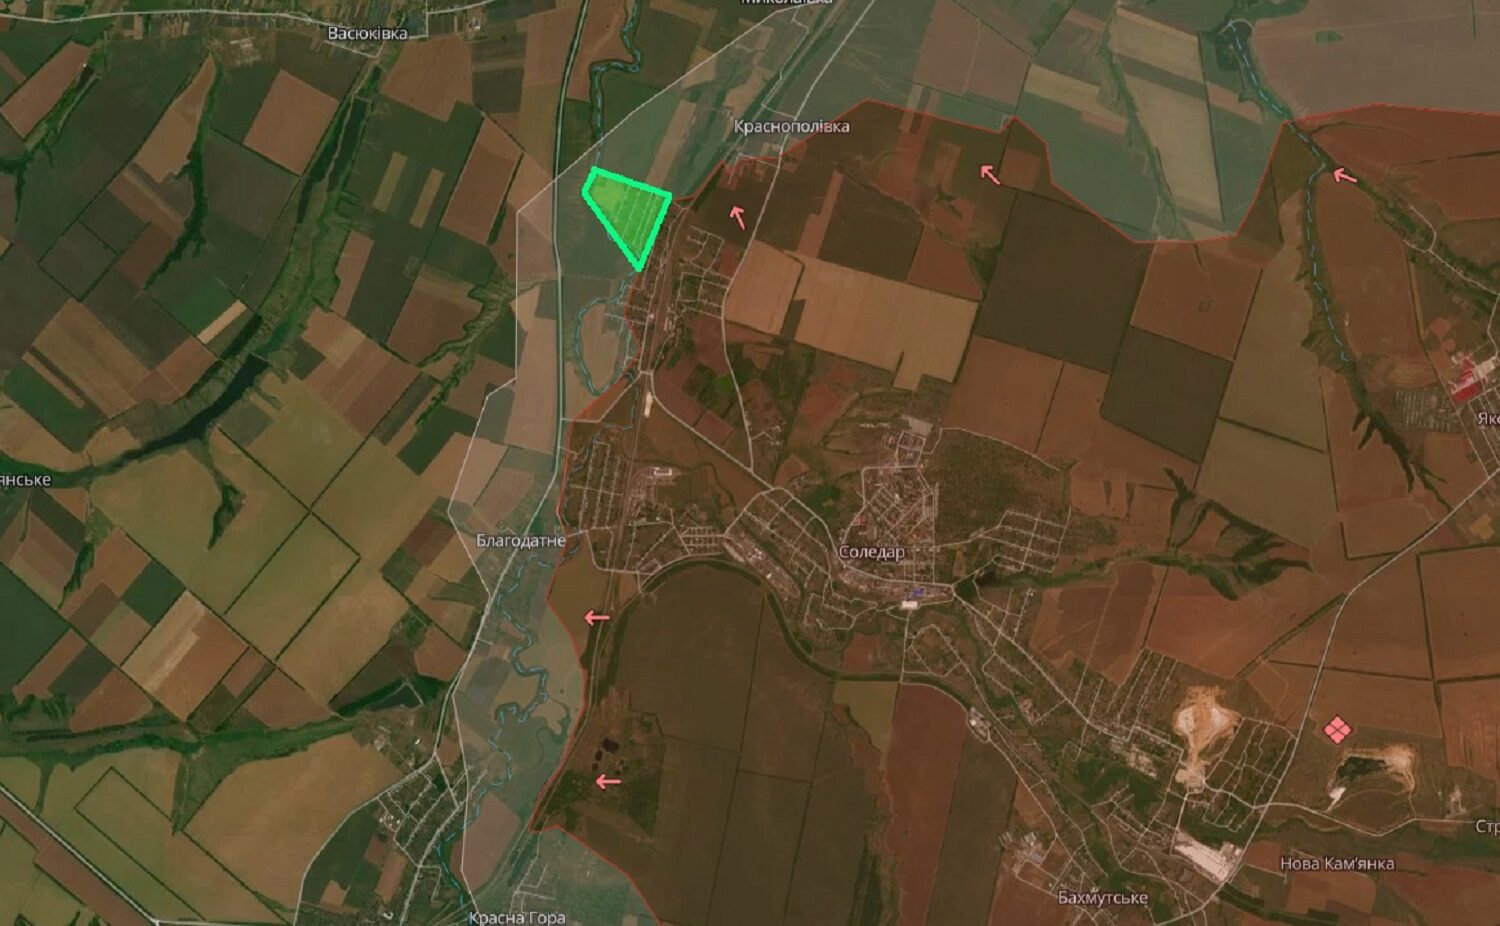 Лінія фронту станом на 22 січня 2022 року. Зеленим позначені південні околиці Соледара, де ЗСУ протримались найдовше